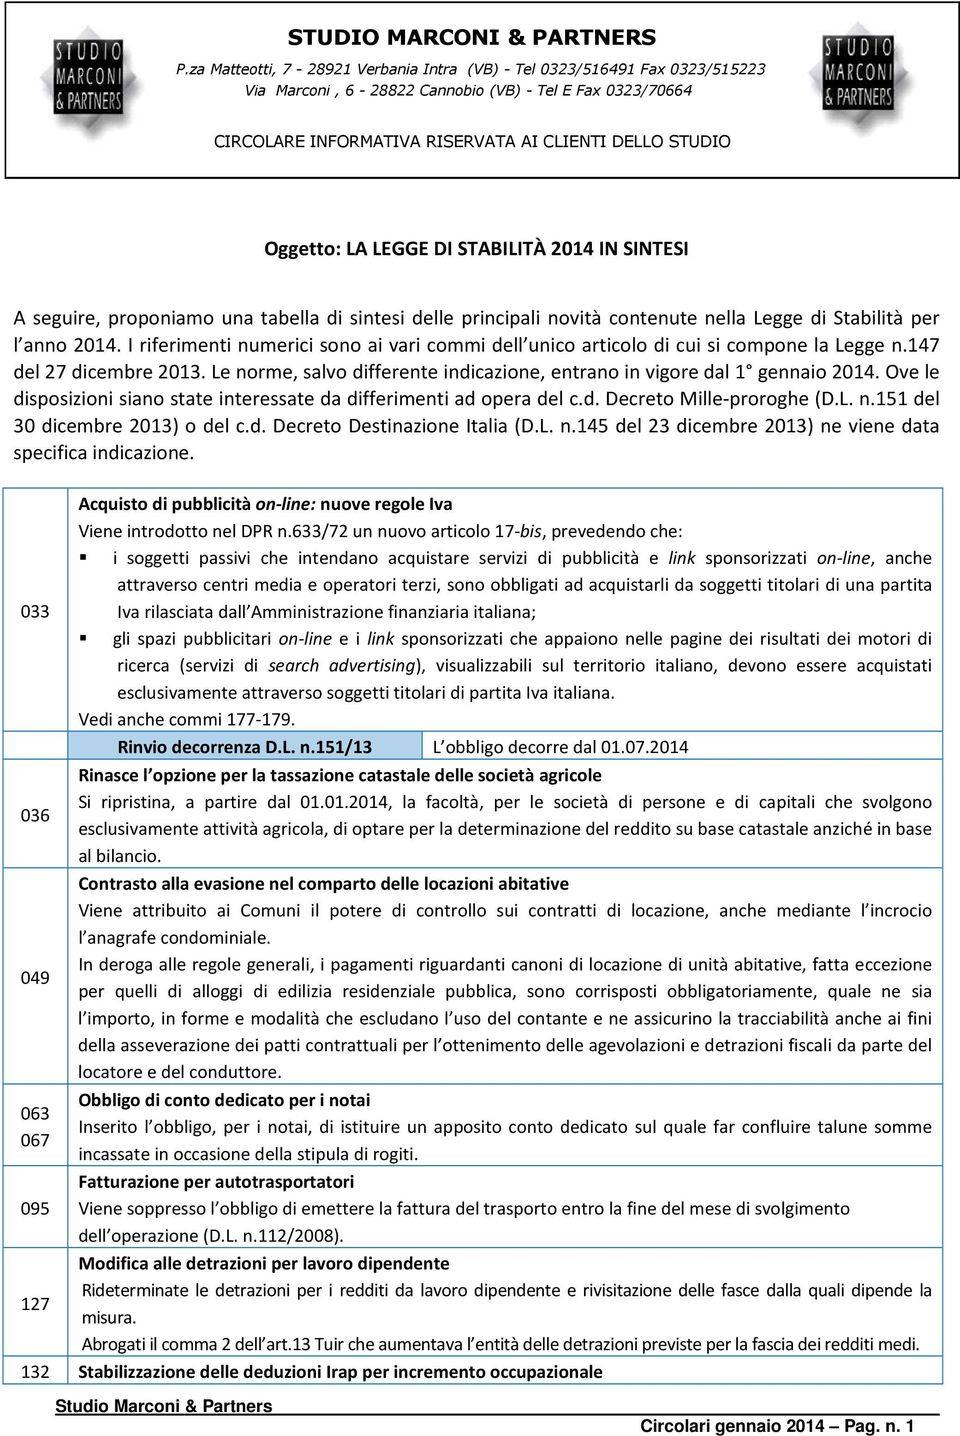 Ove le disposizioni siano state interessate da differimenti ad opera del c.d. Decreto Mille-proroghe (D.L. n.151 del 30 dicembre 2013) o del c.d. Decreto Destinazione Italia (D.L. n.145 del 23 dicembre 2013) ne viene data specifica indicazione.